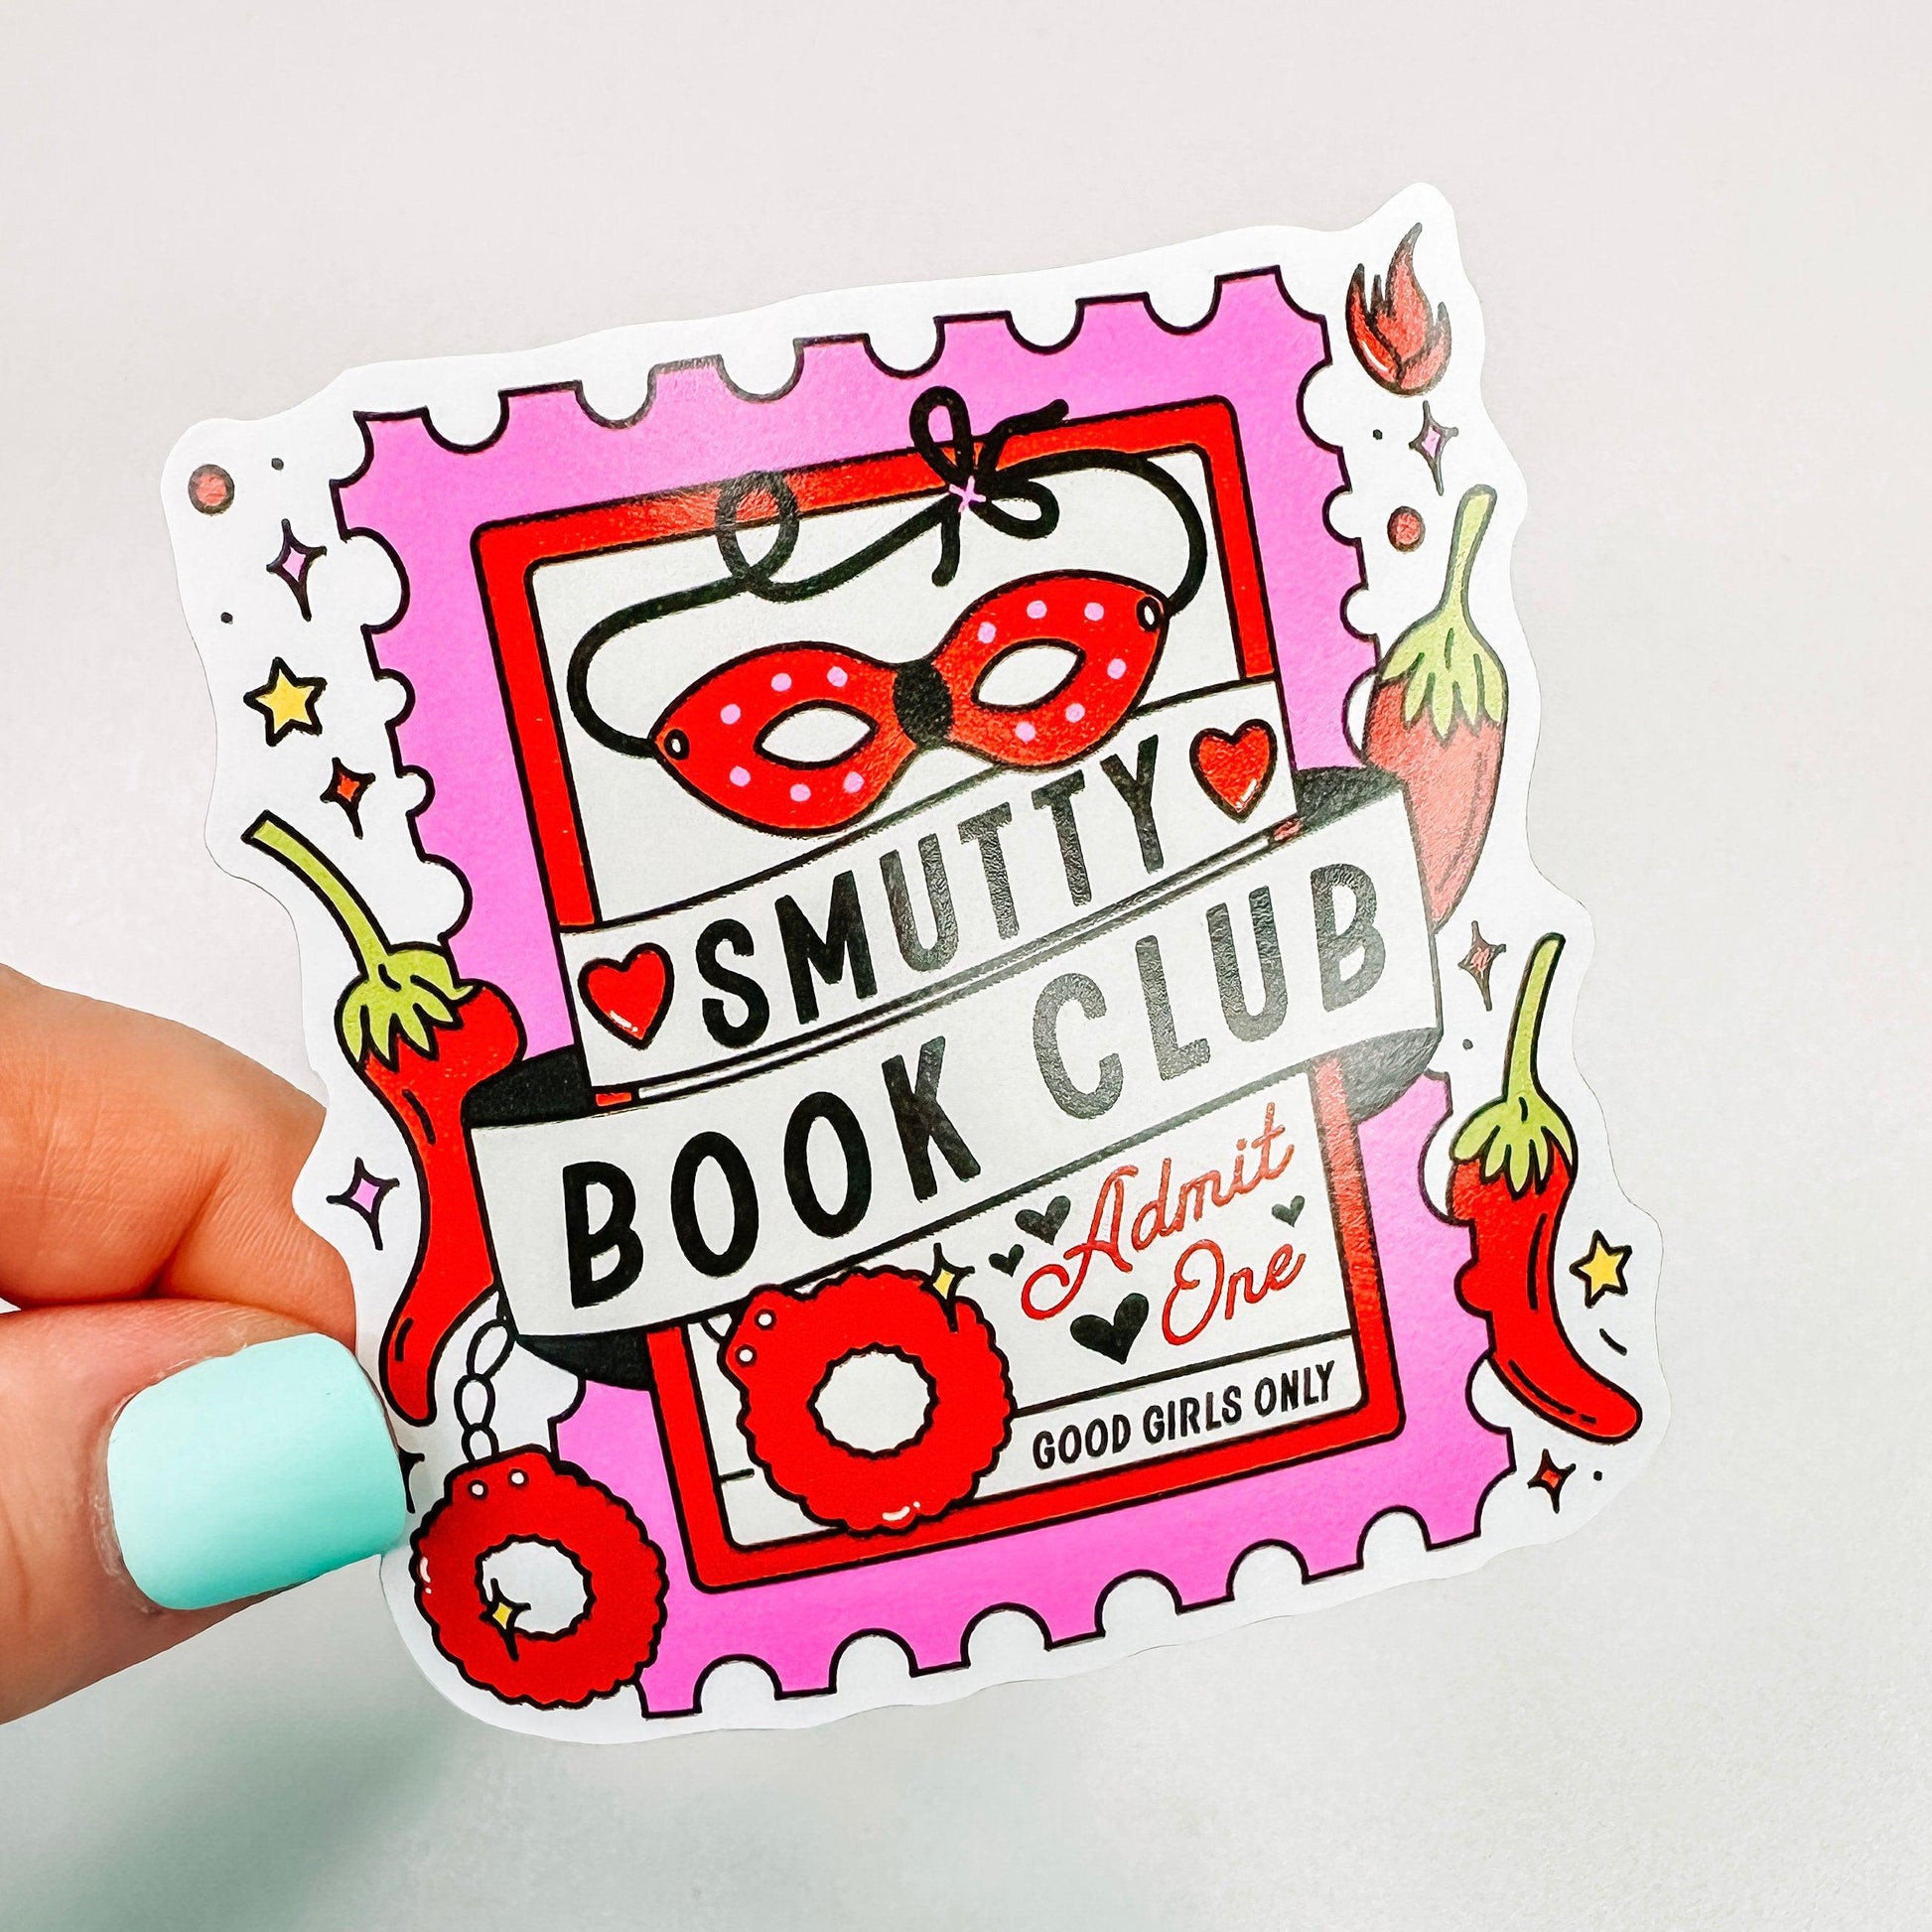 Smutty Book Club Ticket - Bookish Vinyl Sticker-Cricket Paper Co.